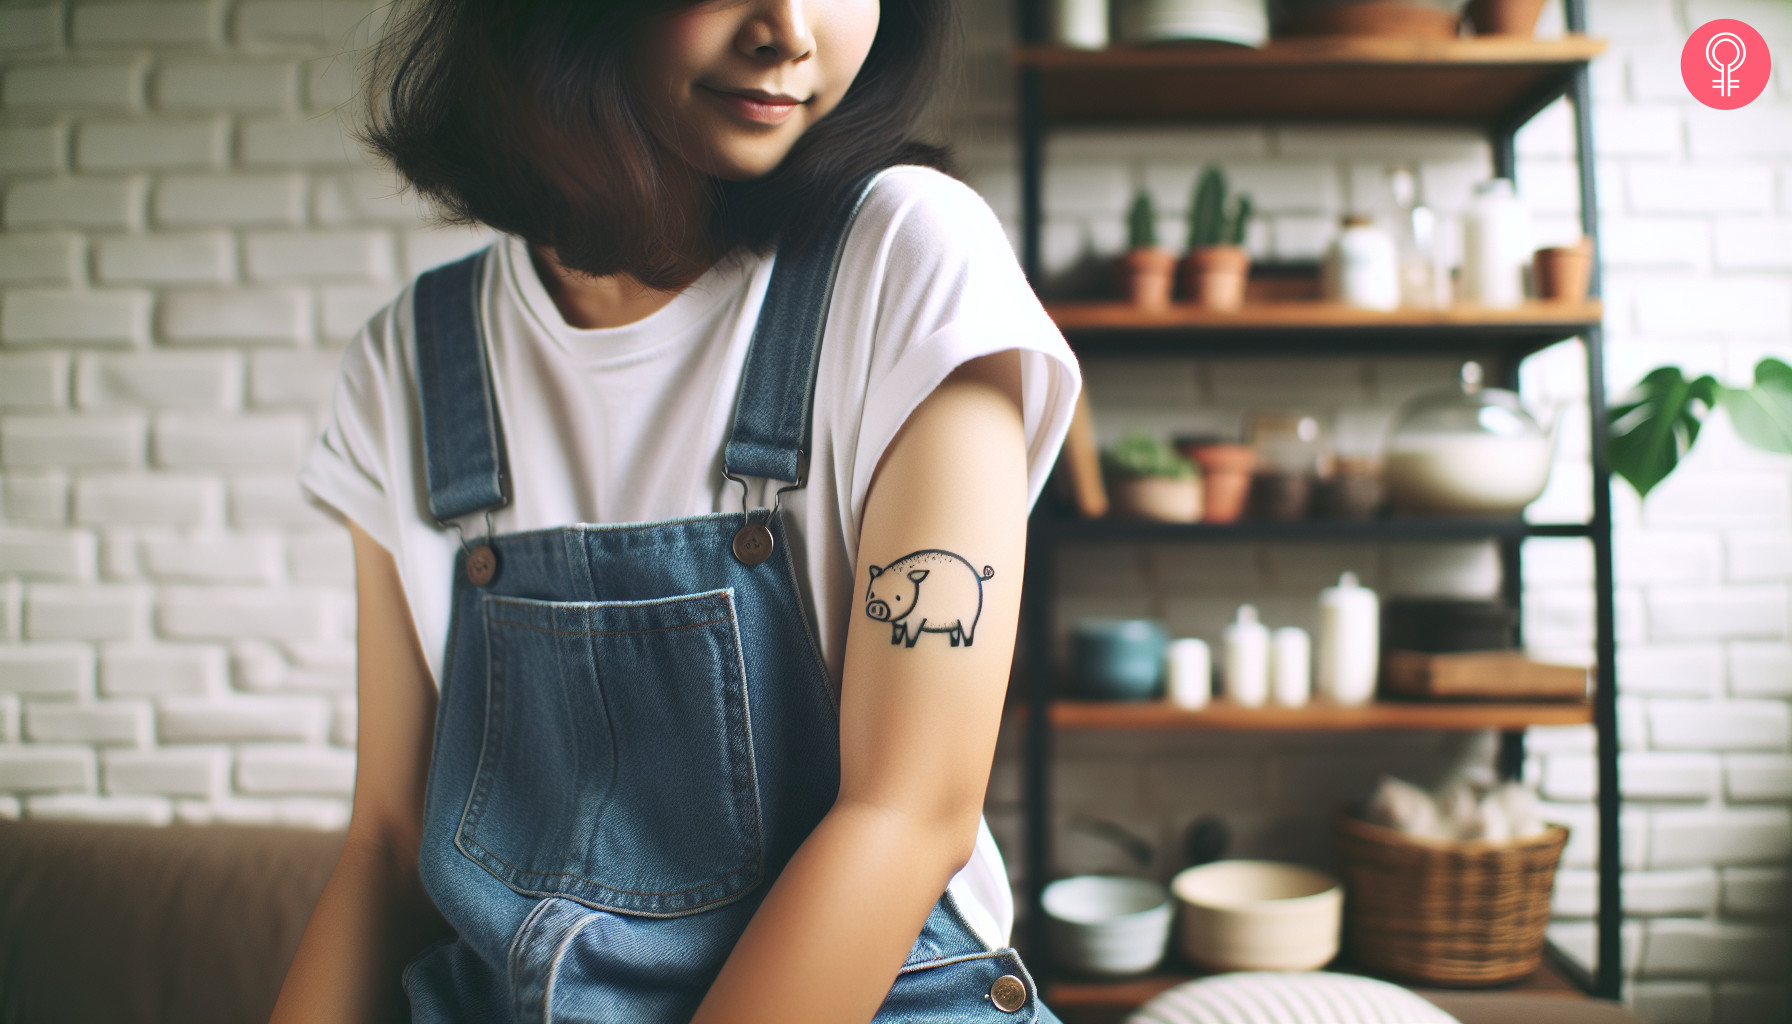 A tattoo of a minimalist pig on a woman’s arm